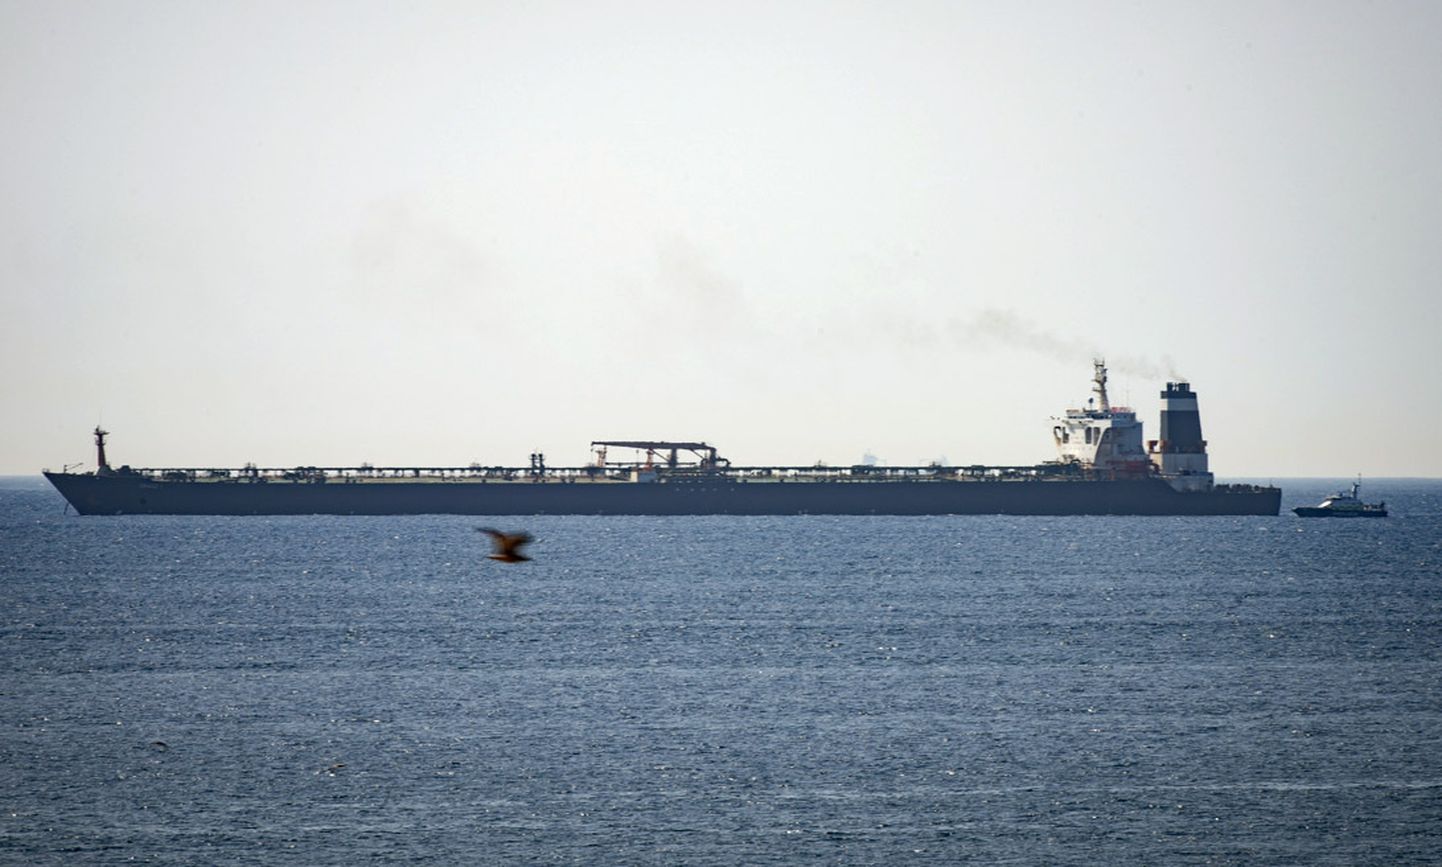 Gibraltārā aizturētais Irānas naftas tankkuģis "Grace 1".